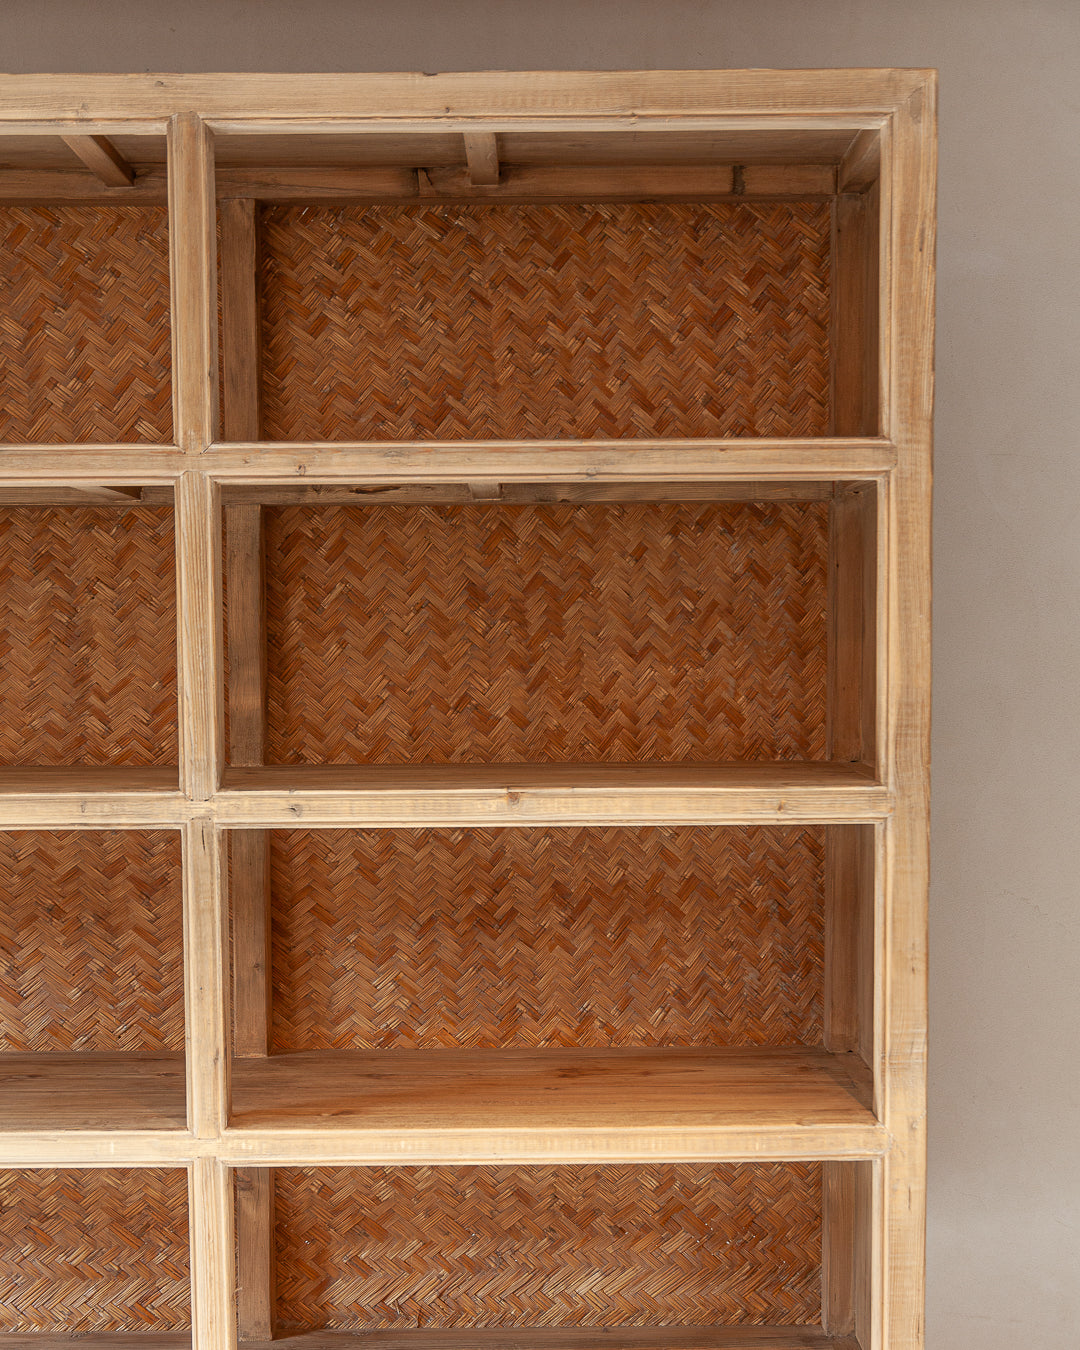 Elm wood shelf